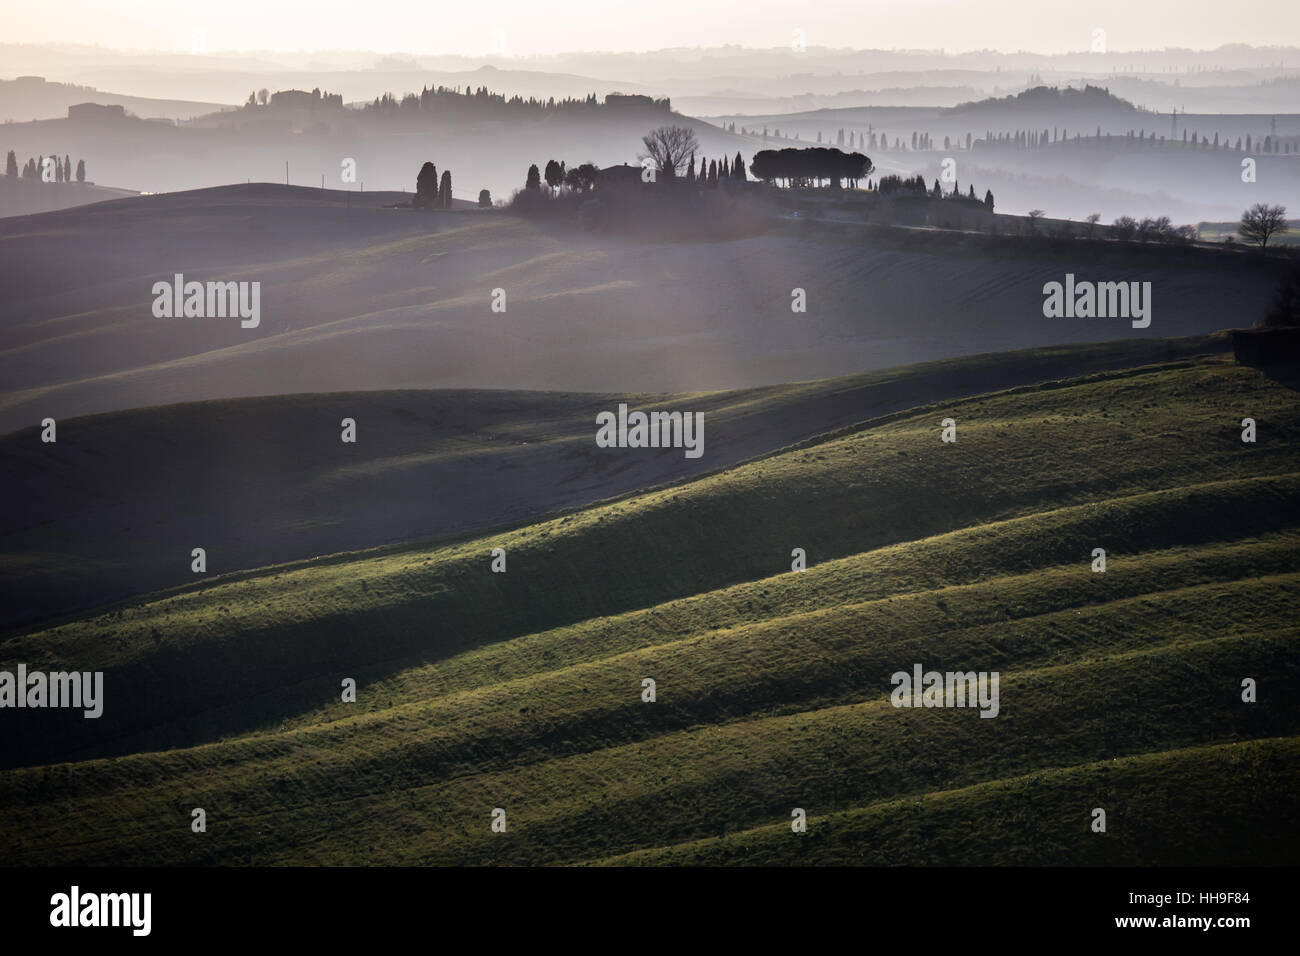 Toskana, sanfte Hügel im Sonnenuntergang. Landschaft der Crete Senesi und Sonnenlicht. Grüne Felder, ein Hof mit Bäumen. Siena, Italien Stockfoto